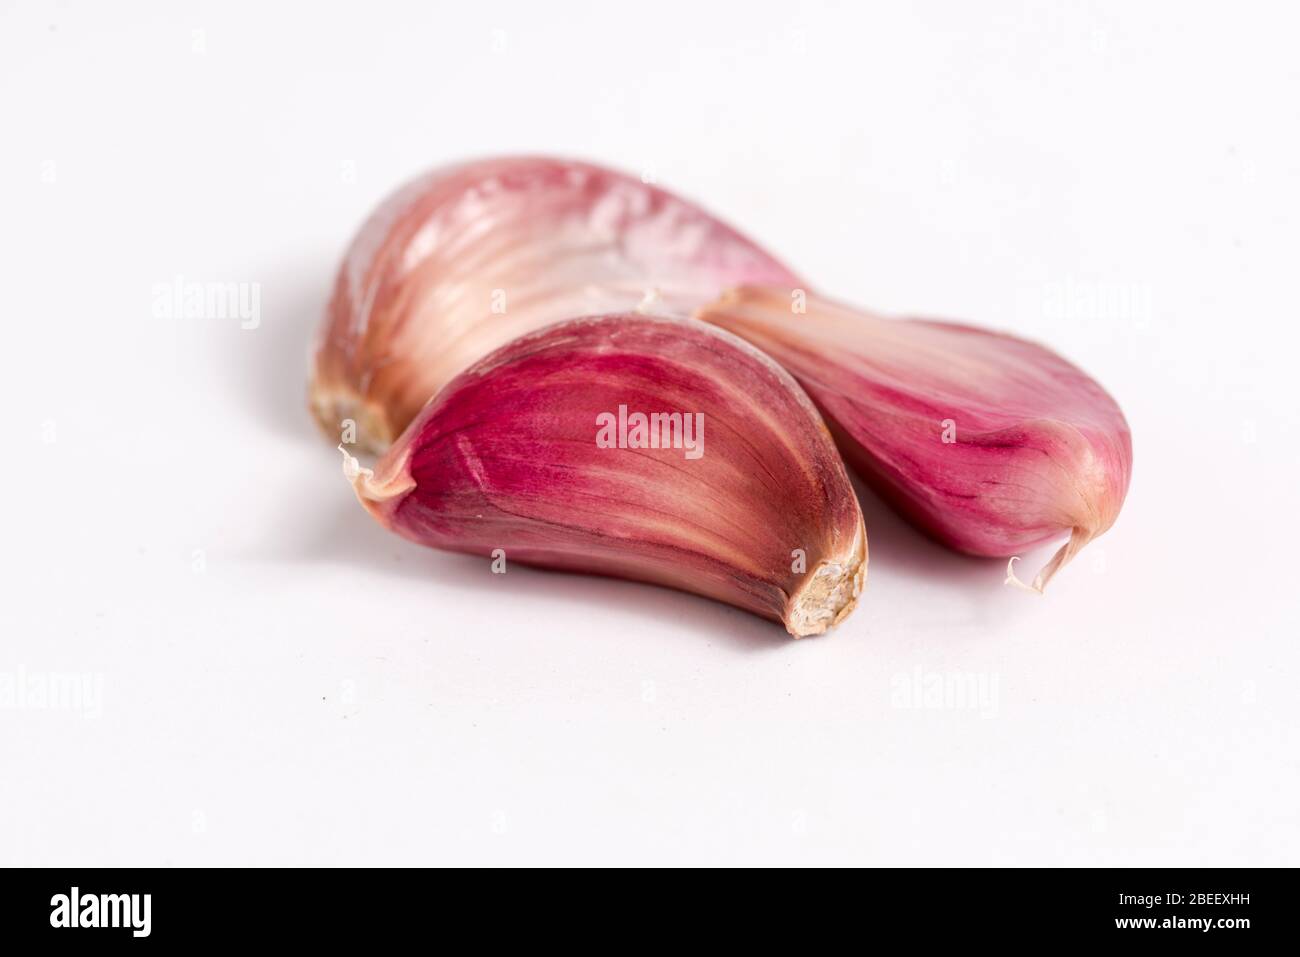 Garlic details isolated on plain background Stock Photo